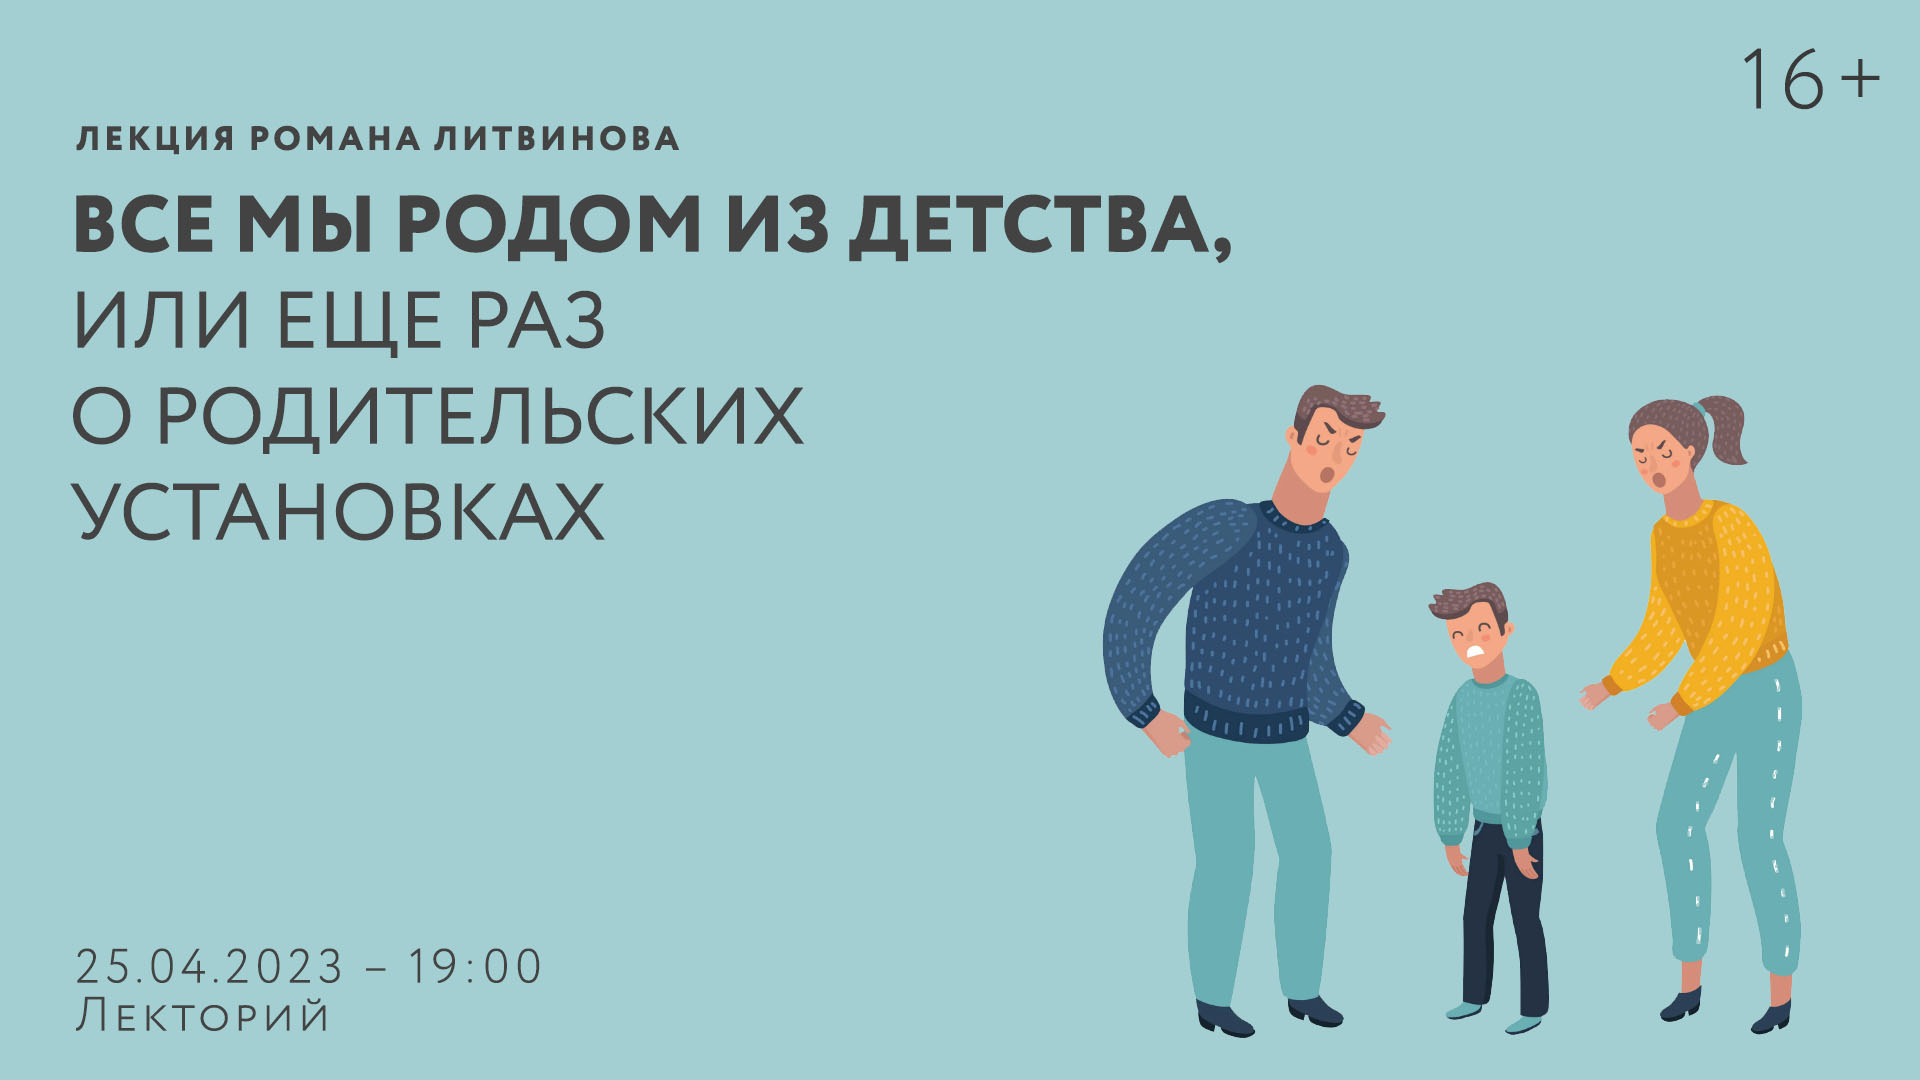 Лекция Романа Литвинова «Все мы родом из детства, или Еще раз<br> о родительских установках»